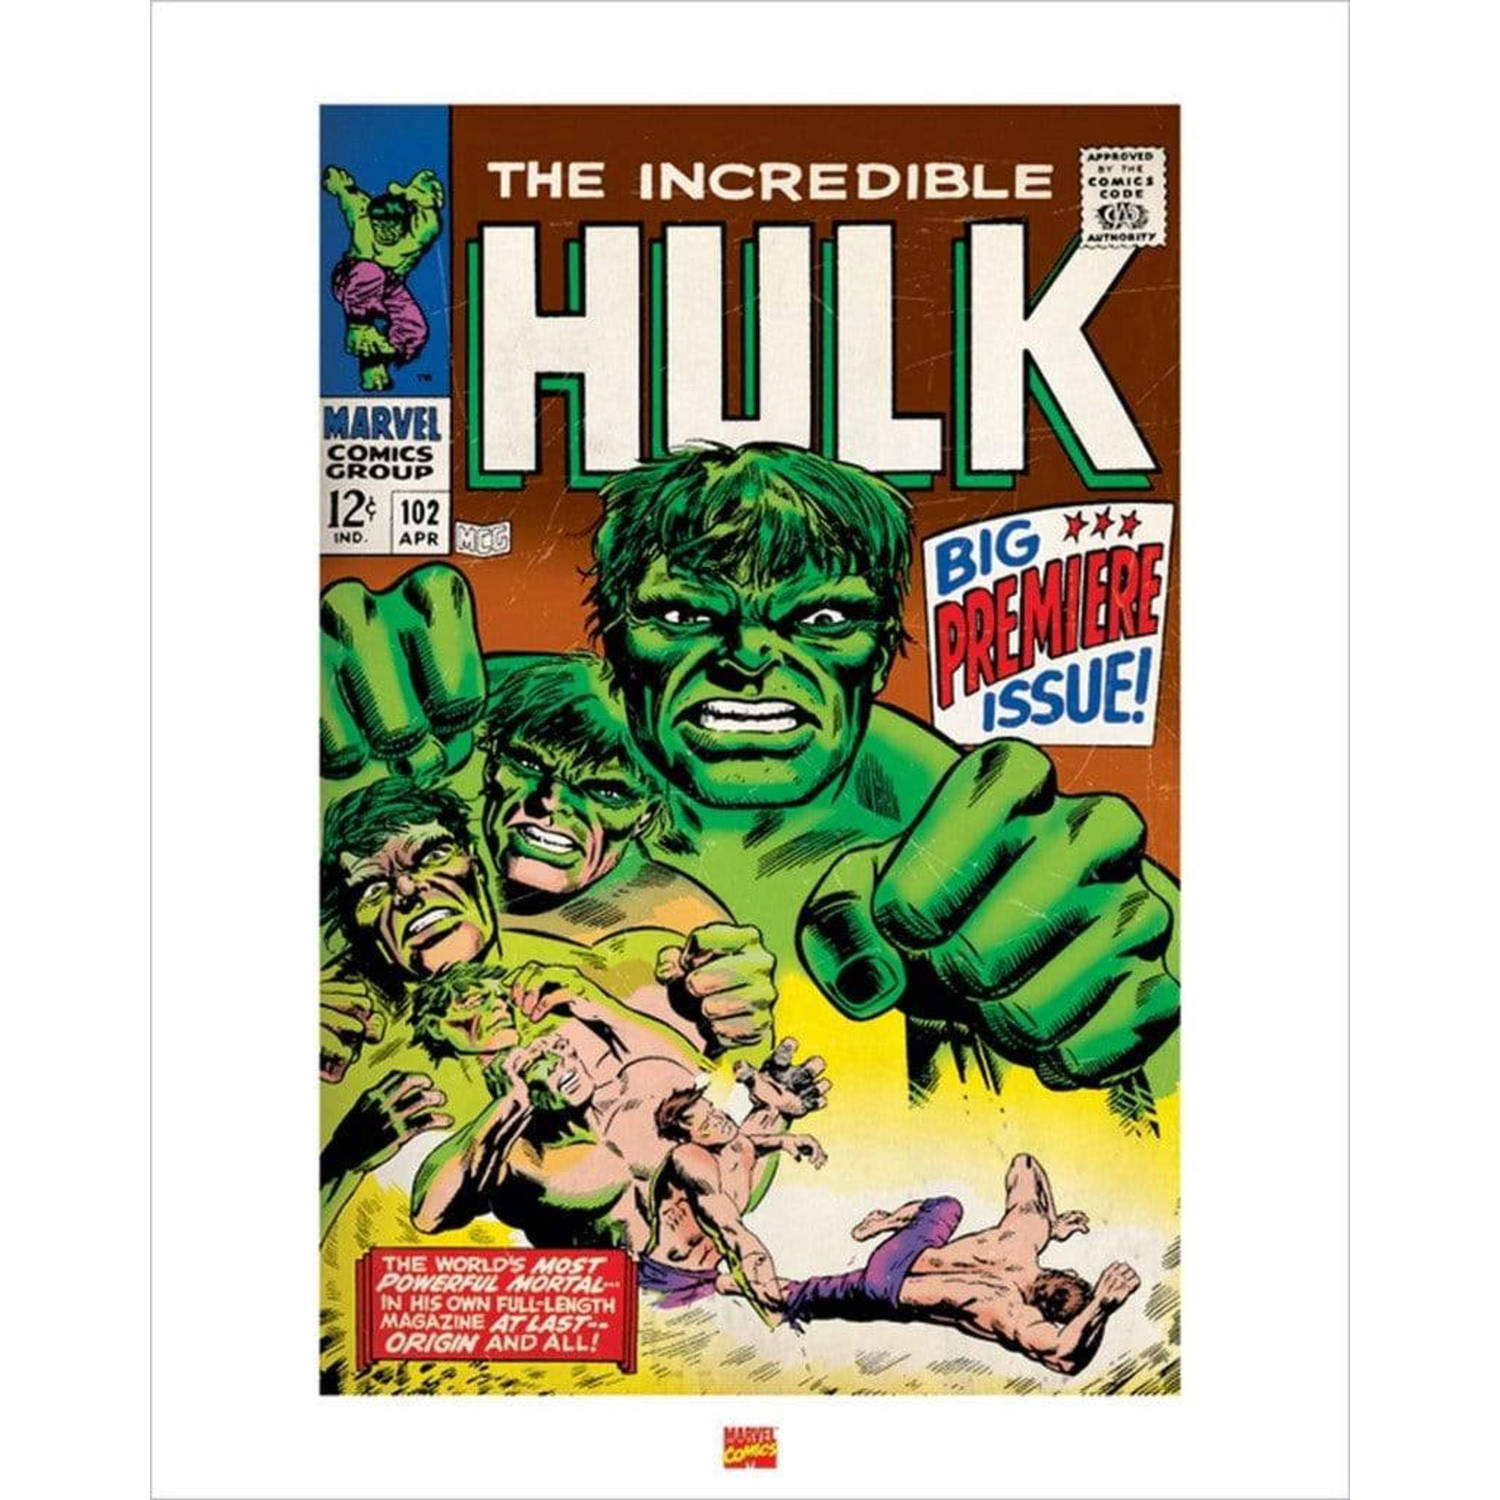 Kunstdruk Hulk 40x50cm